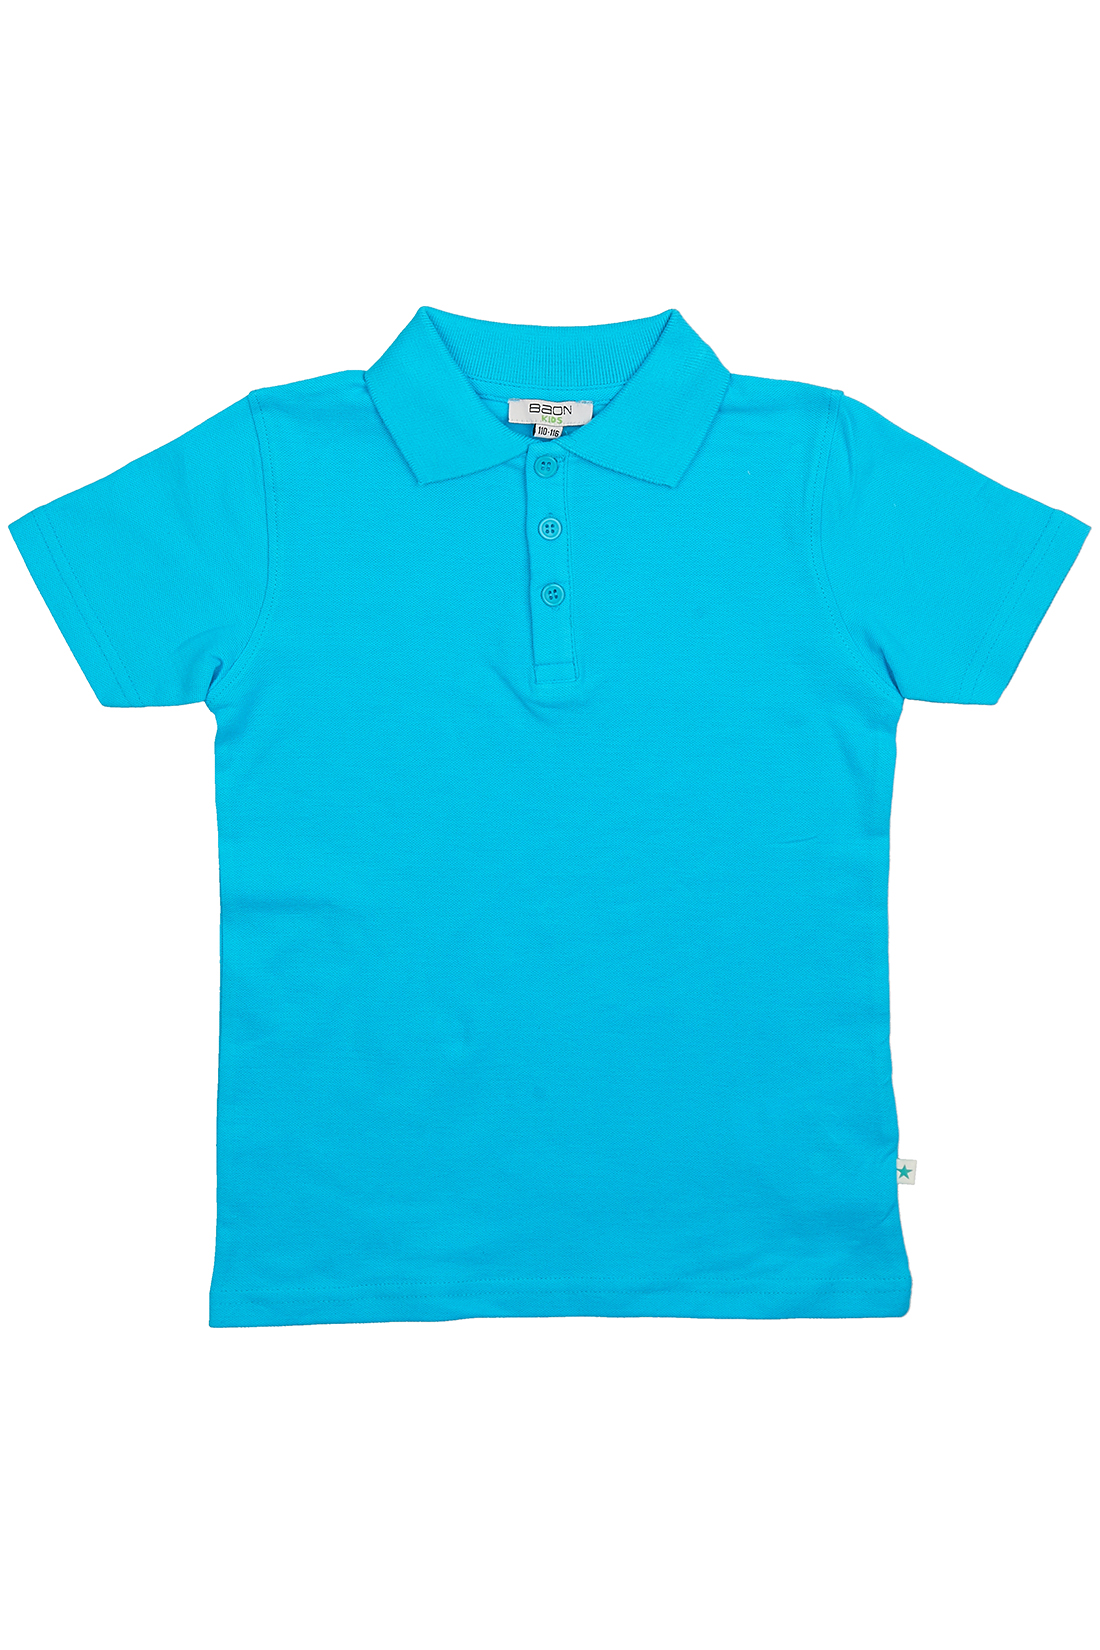 Поло для мальчика (арт. baon BK708003), размер 98-104, цвет голубой Поло для мальчика (арт. baon BK708003) - фото 4